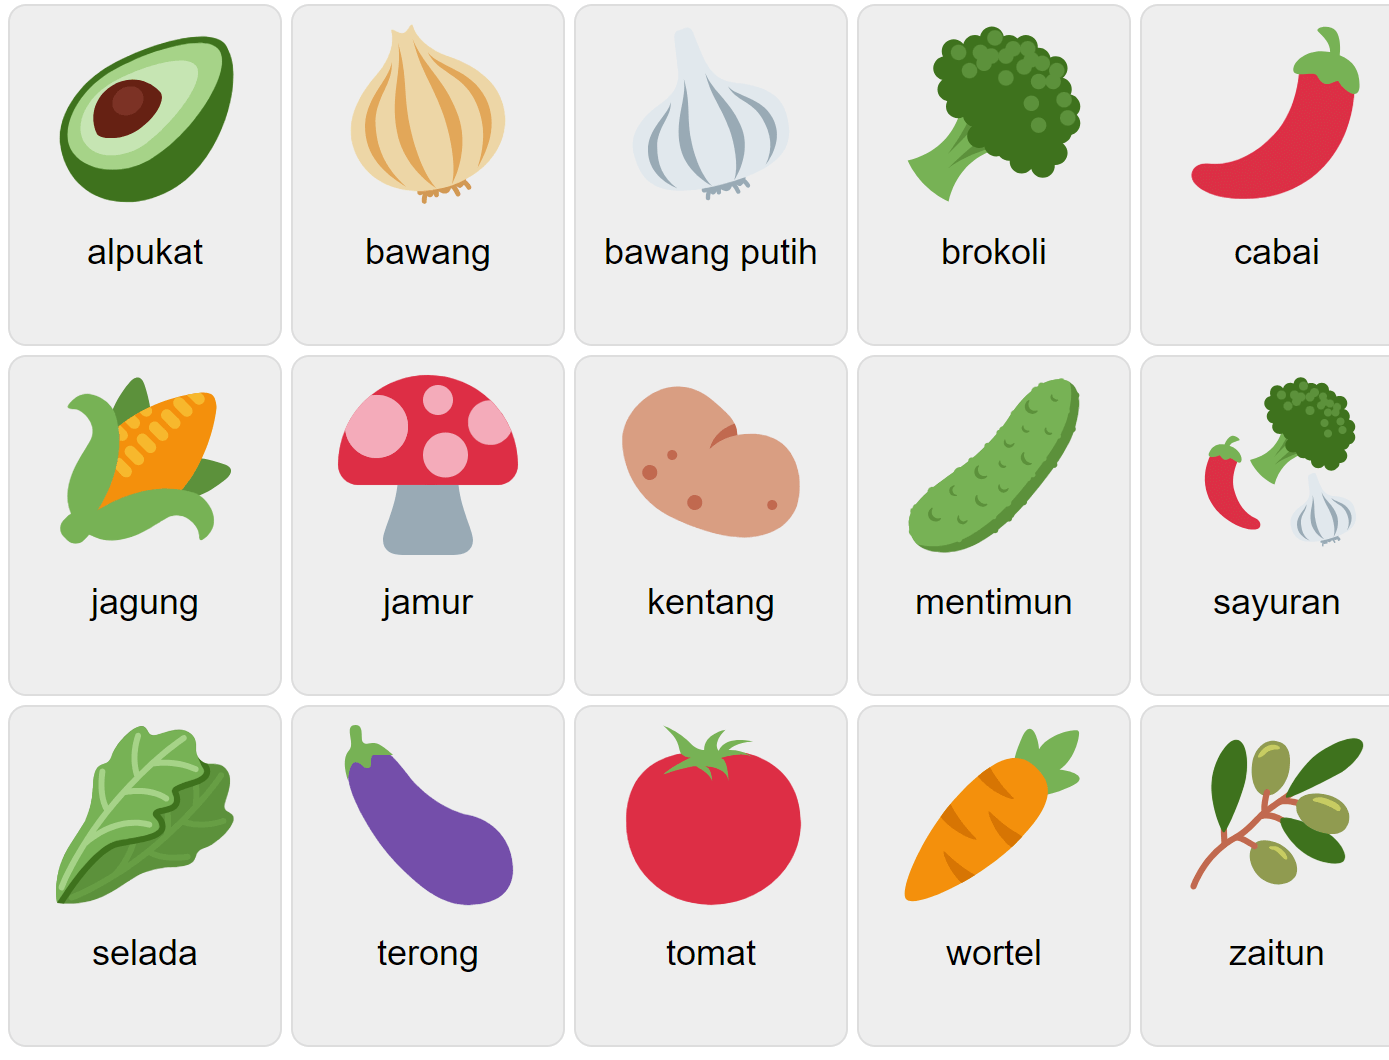 Овощи на индонезийском языке